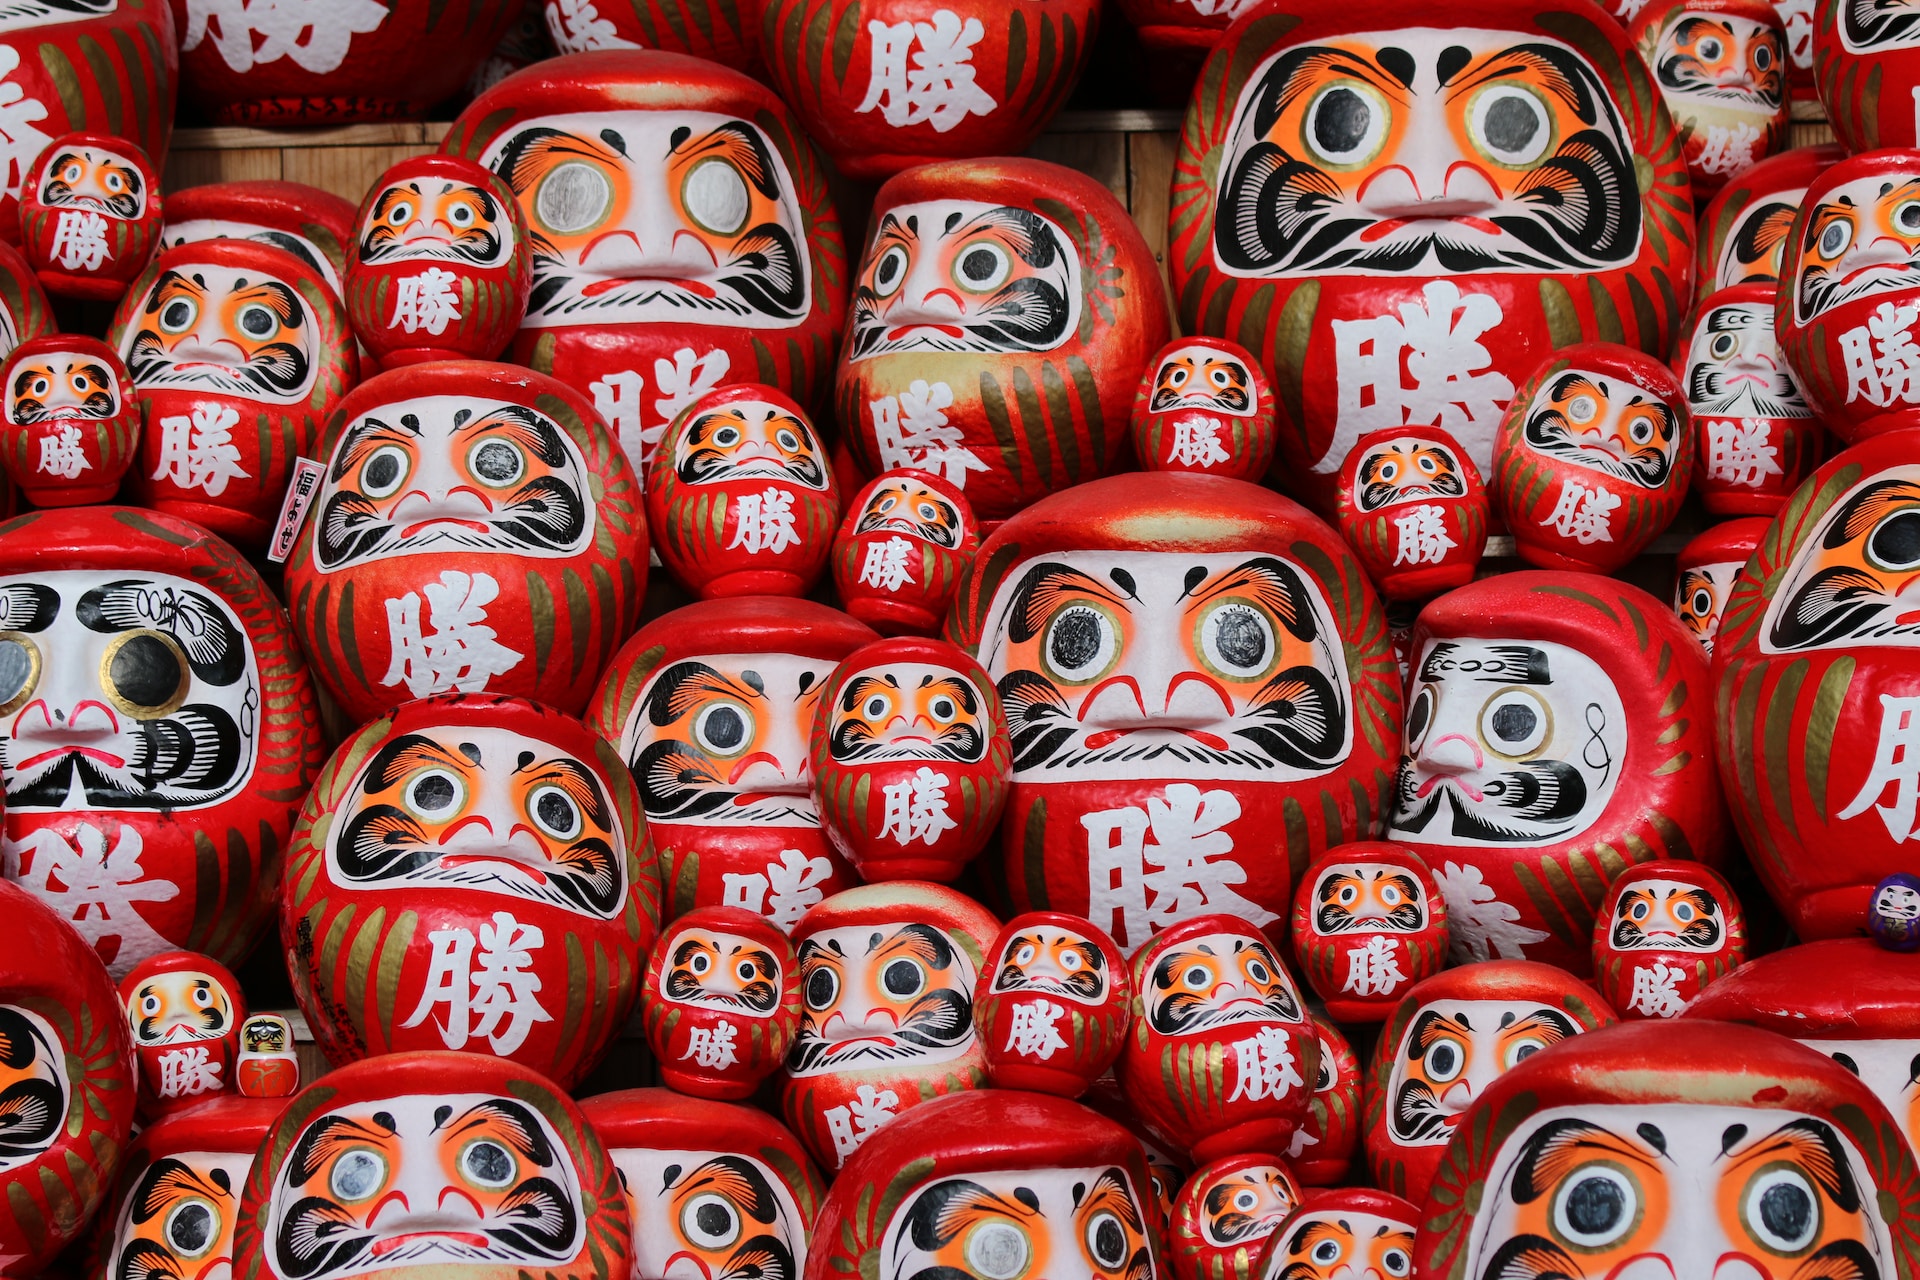 red-and-white daruma dolls